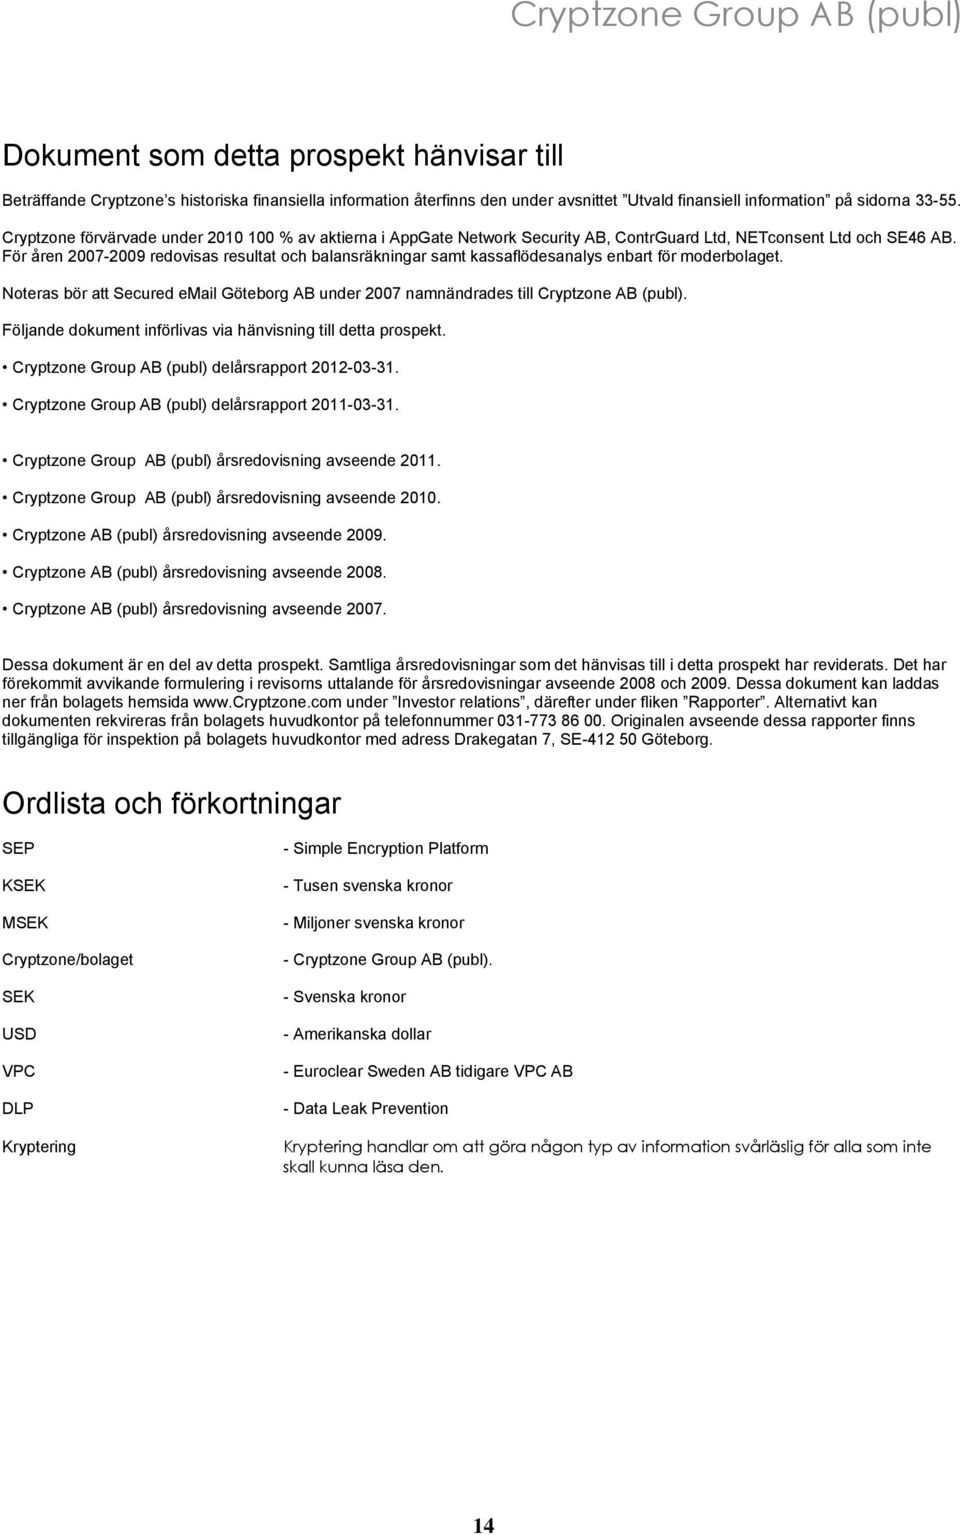 För åren 2007-2009 redovisas resultat och balansräkningar samt kassaflödesanalys enbart för moderbolaget. Noteras bör att Secured email Göteborg AB under 2007 namnändrades till Cryptzone AB (publ).